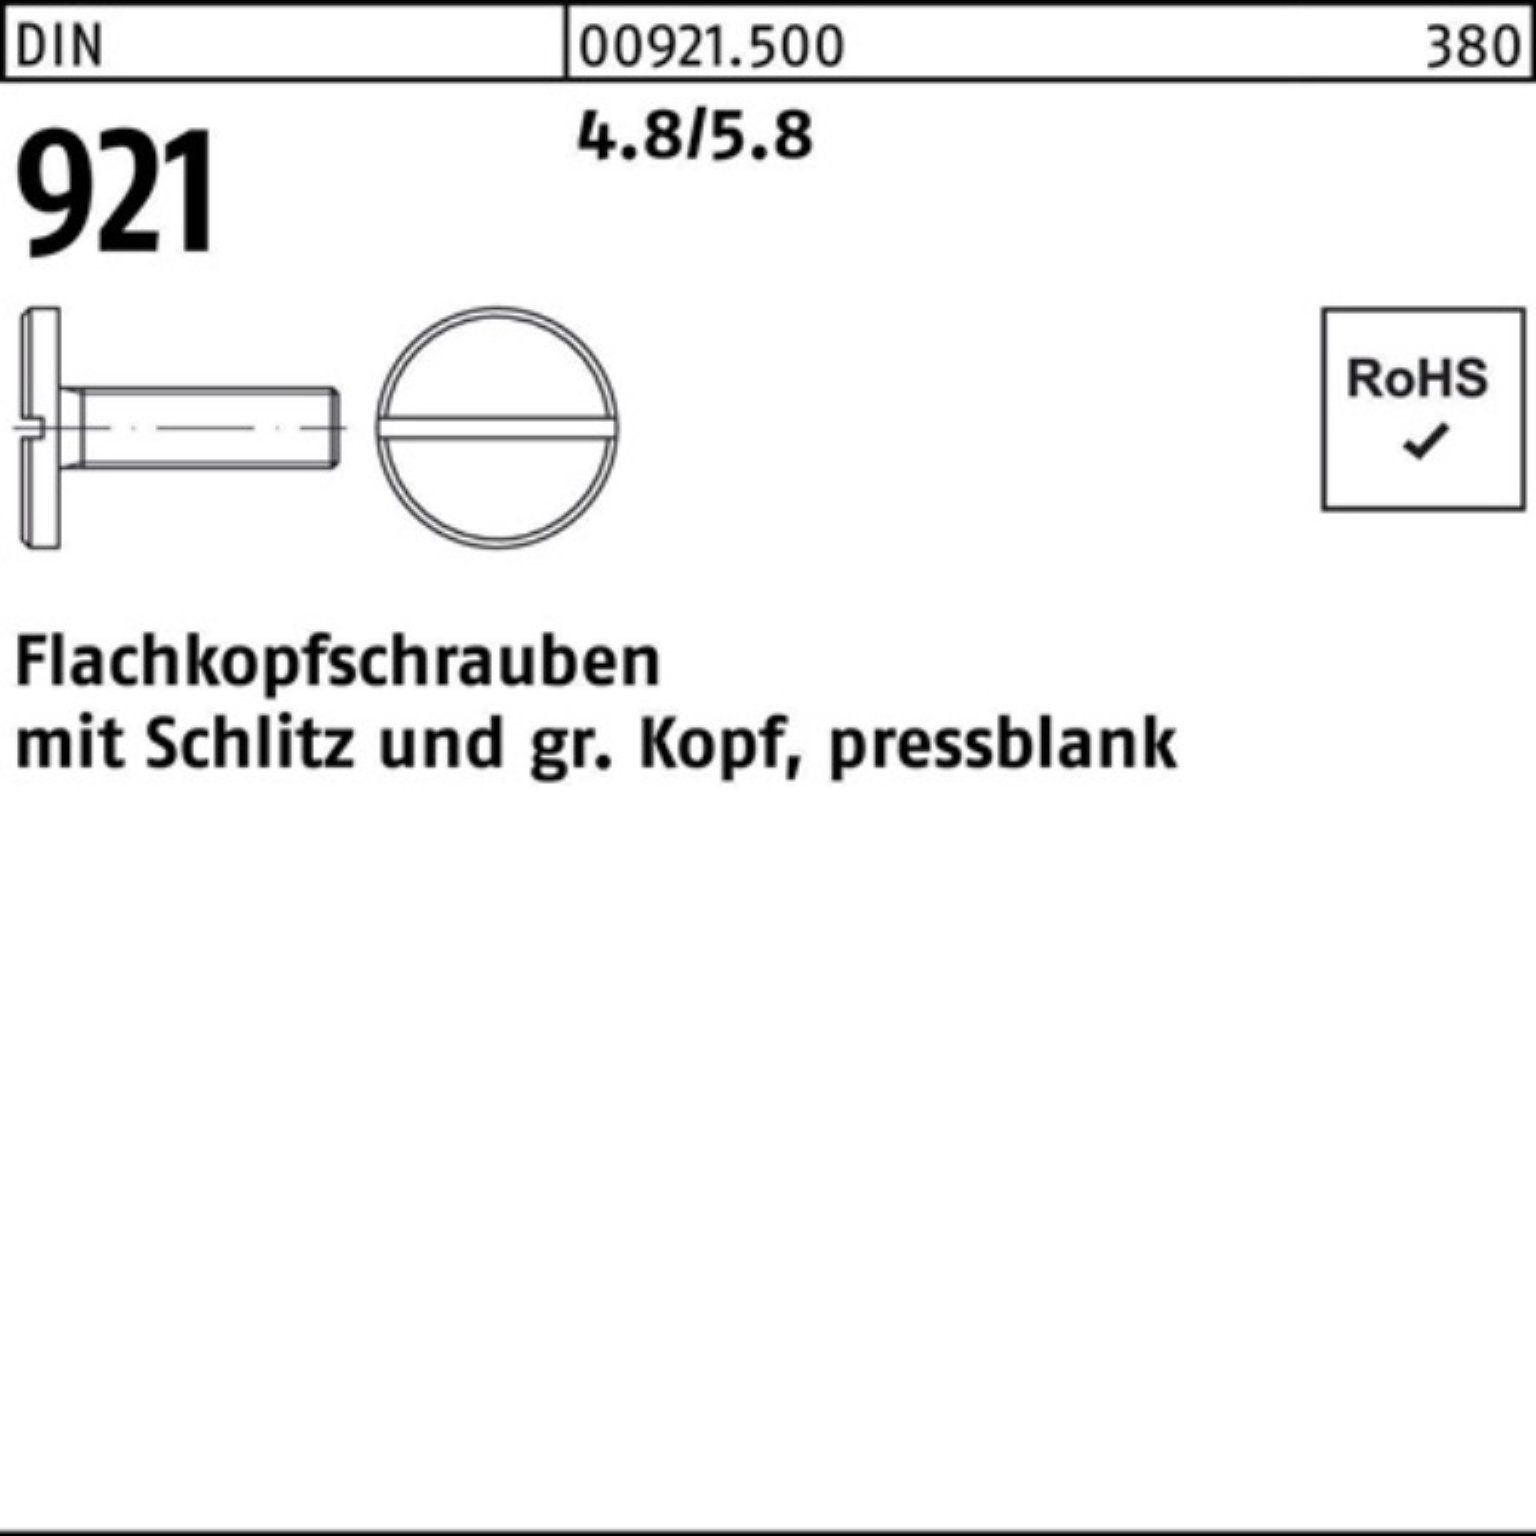 Reyher Schraube 100er Pack Flachkopfschraube DIN 921 Schlitz M5x 10 4.8/5.8 100 Stück